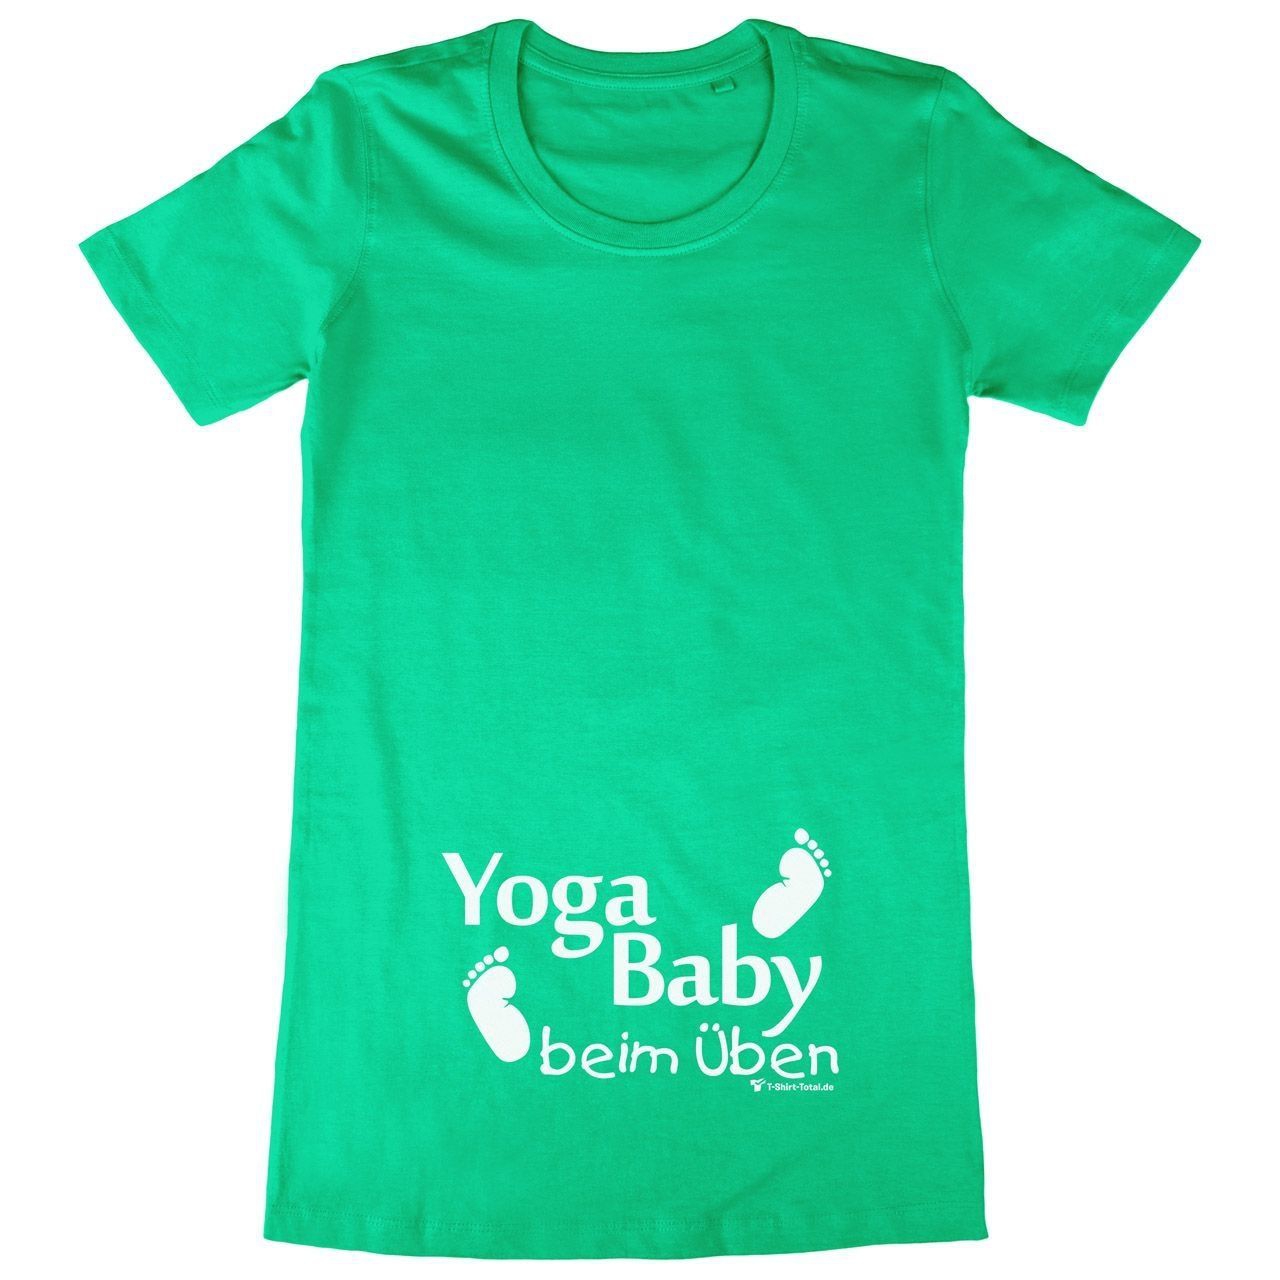 Yoga Baby Woman Long Shirt grün Extra Small